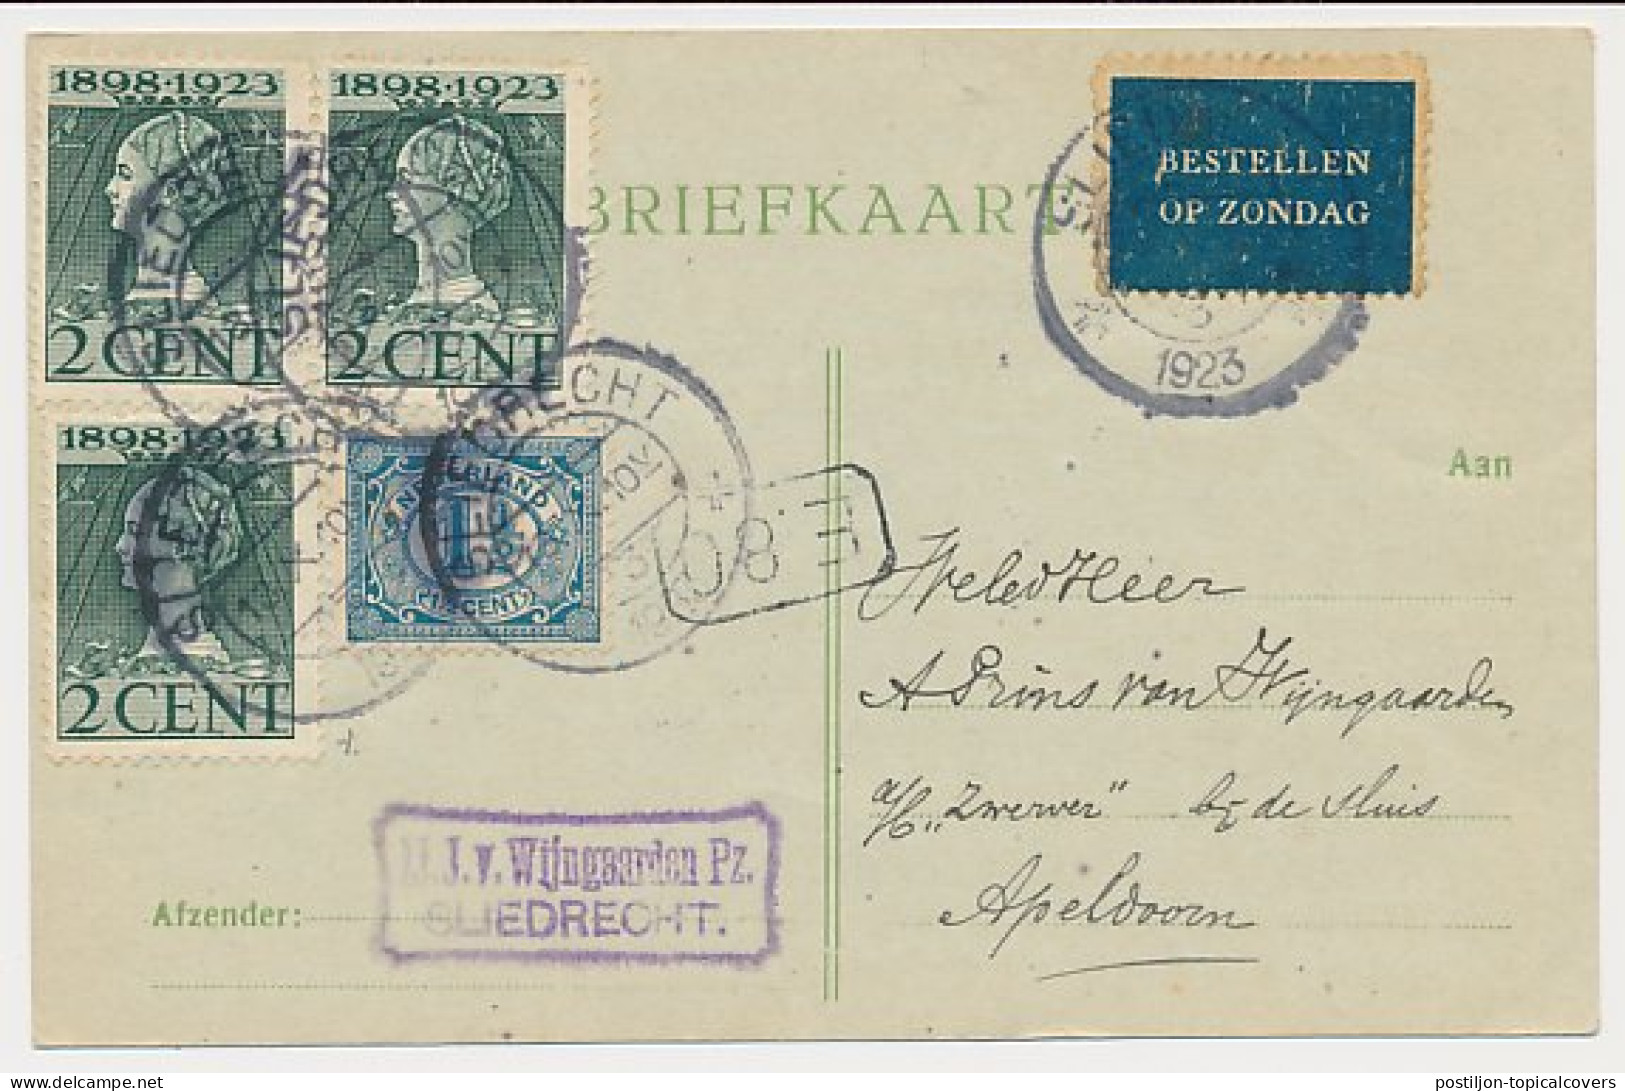 Bestellen Op Zondag - Sliedrecht - Apeldoorn 1923 - Covers & Documents